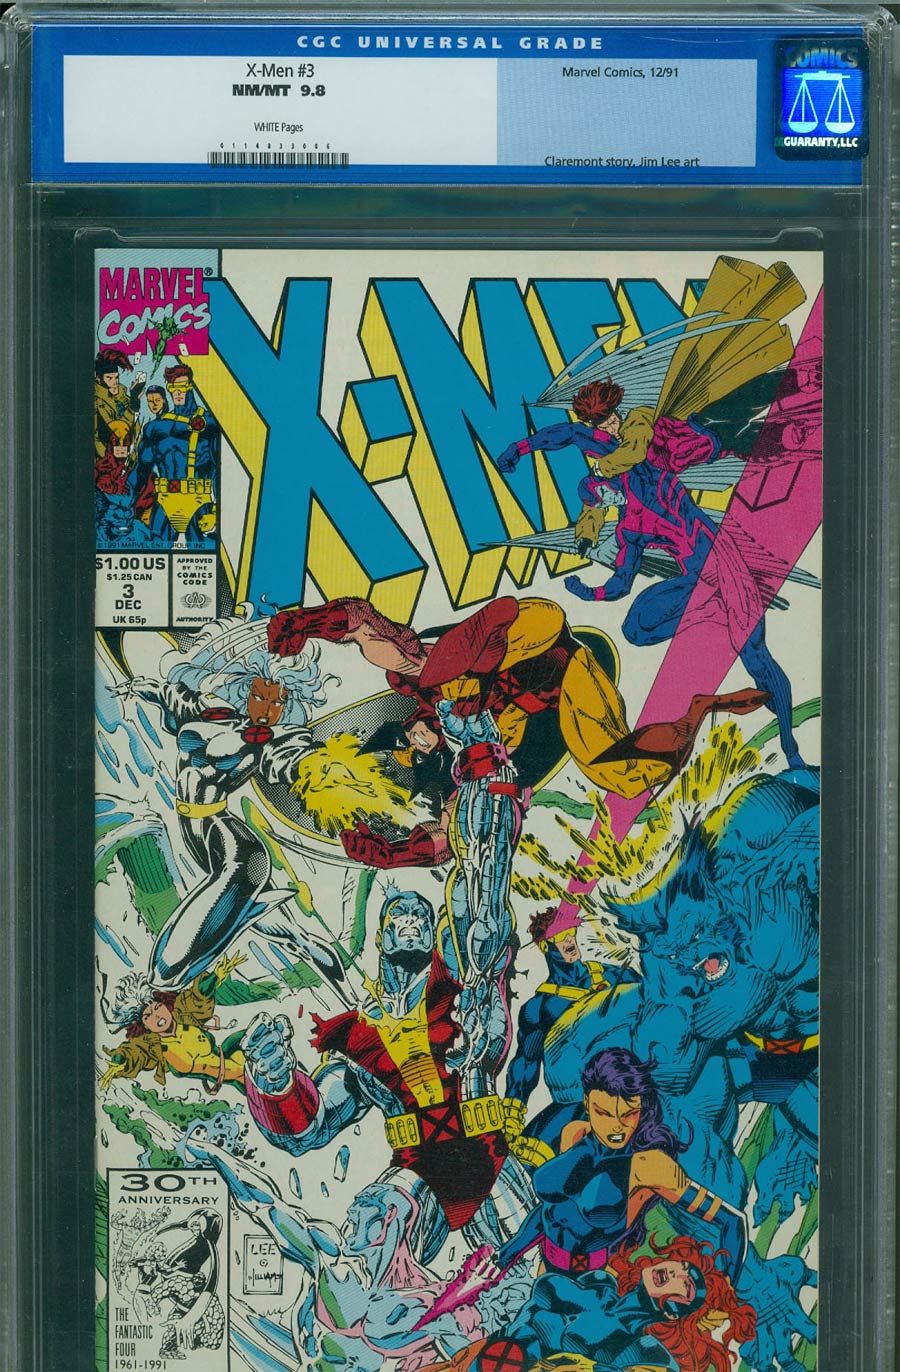 X-Men Vol 2 #3 Cover C CGC 9.8